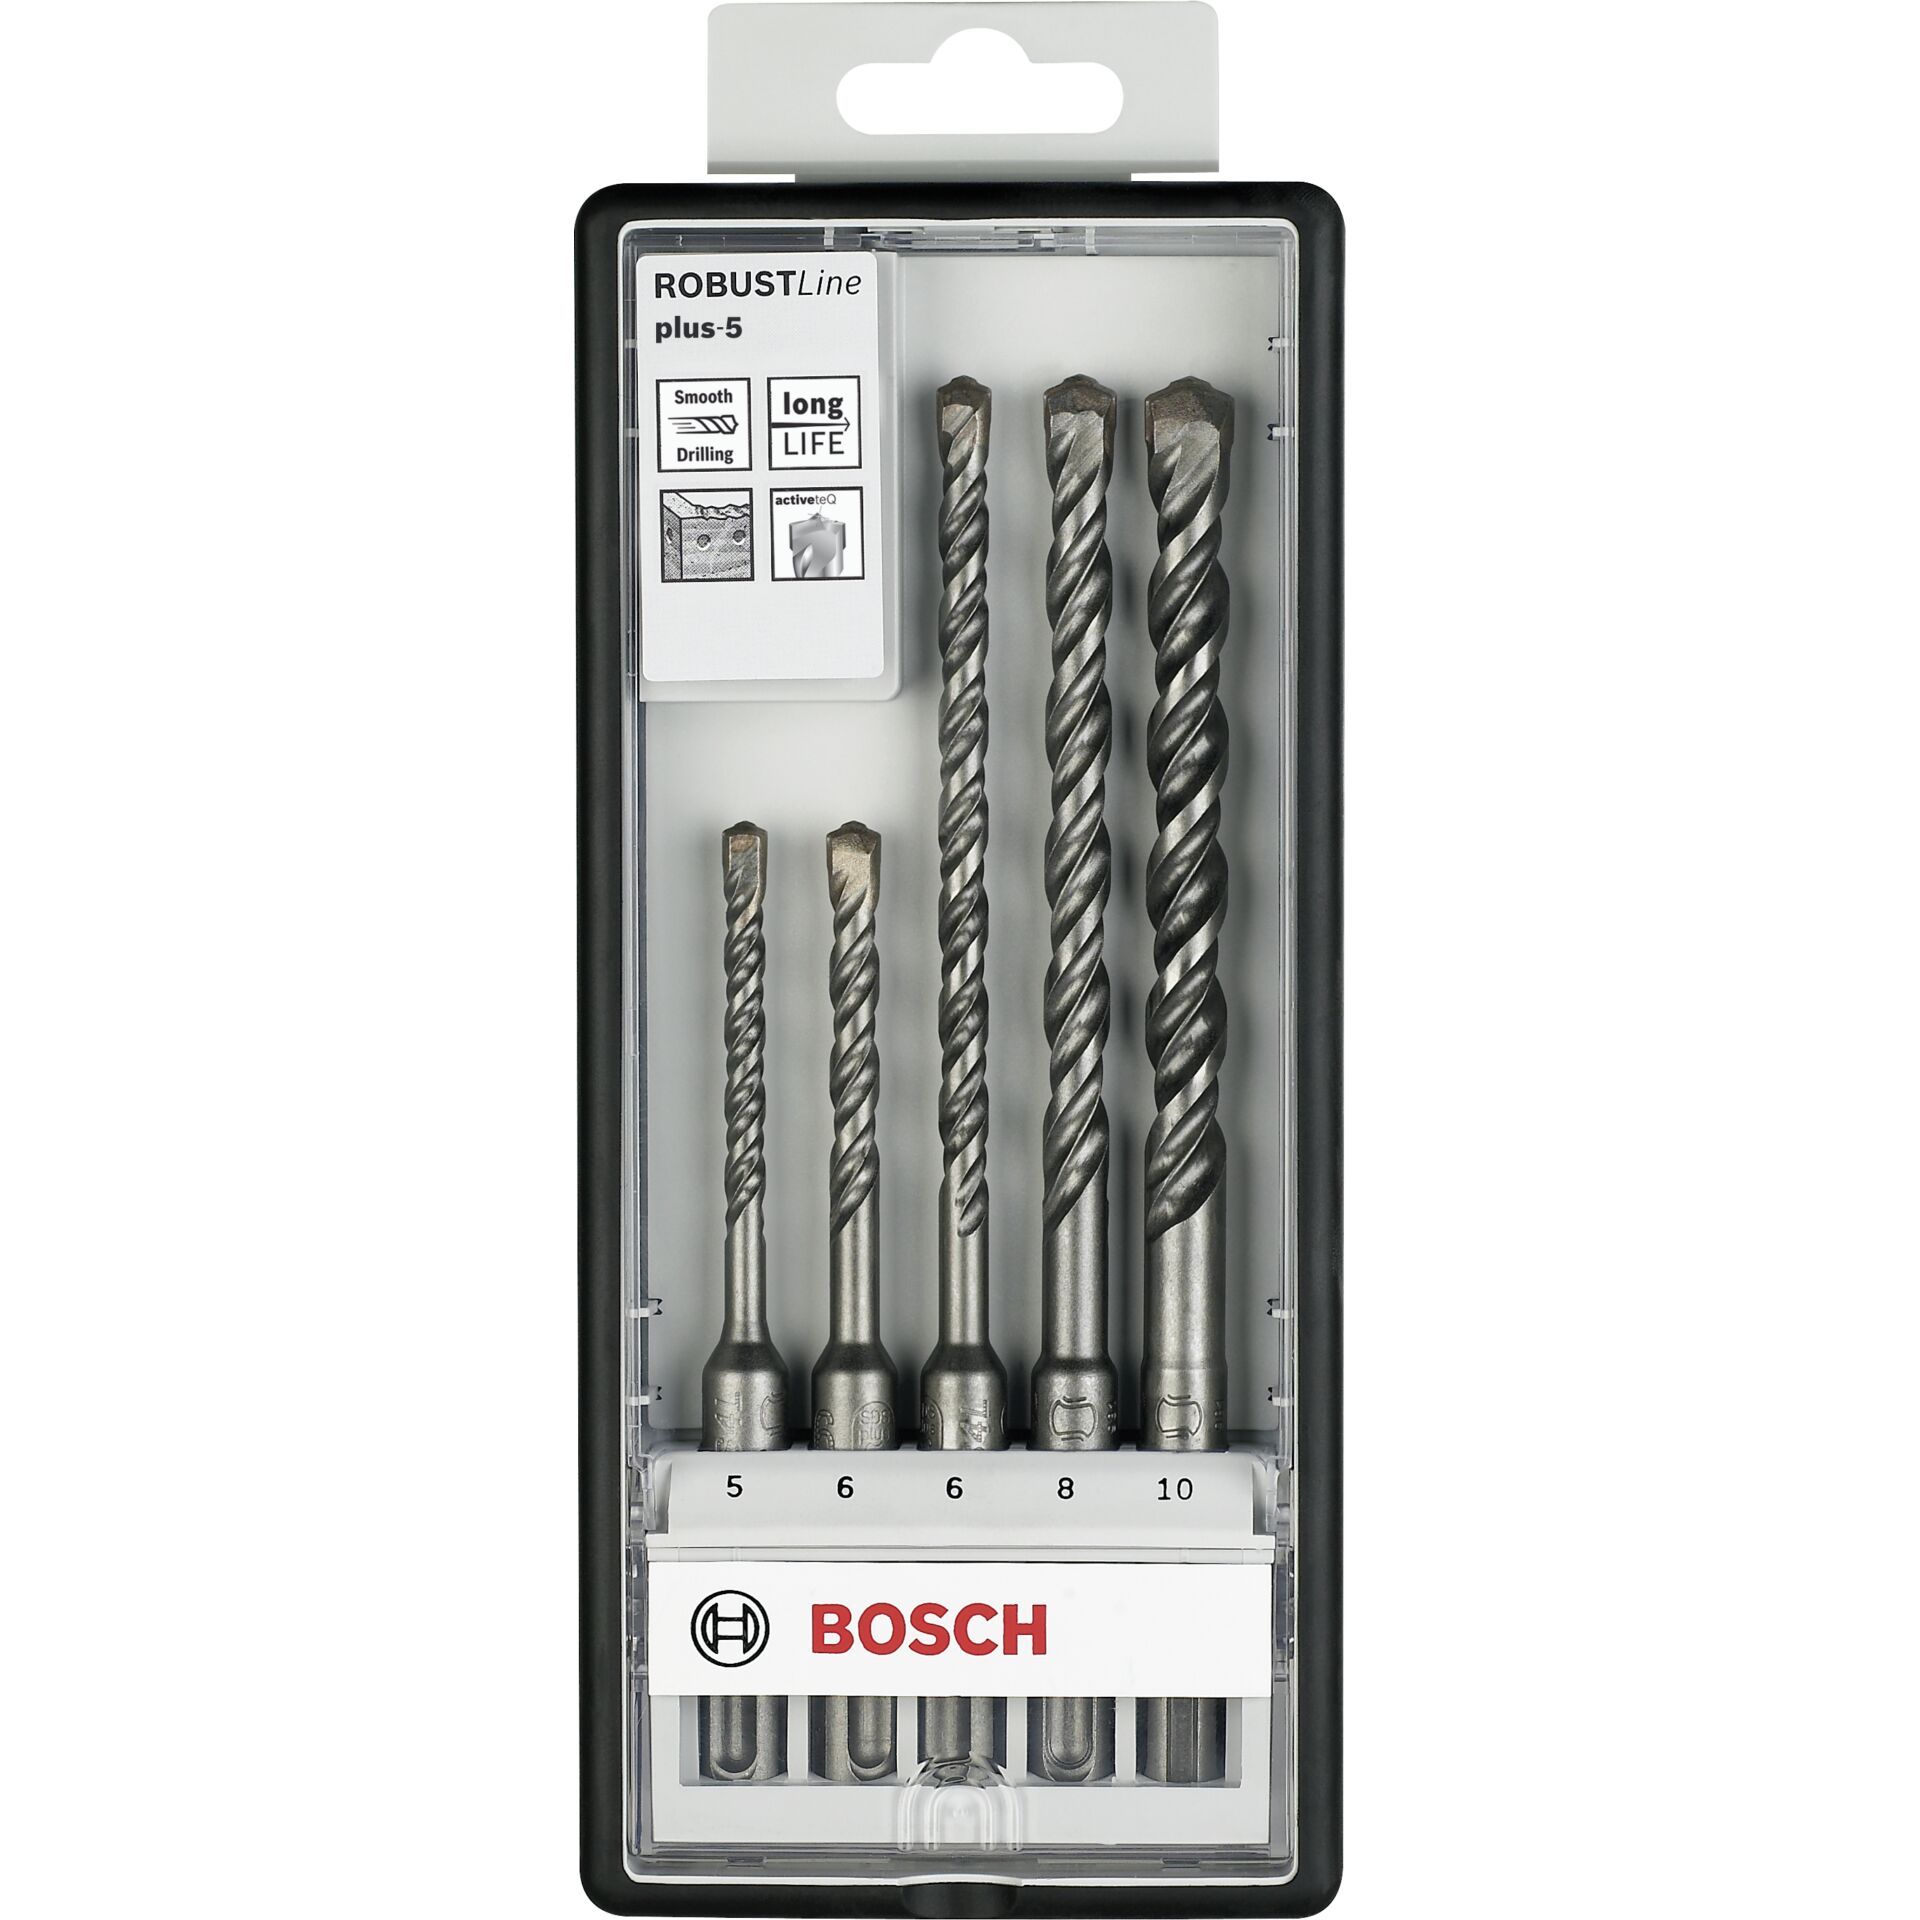 Bosch 5pcs. plus-5 Robust Line Set